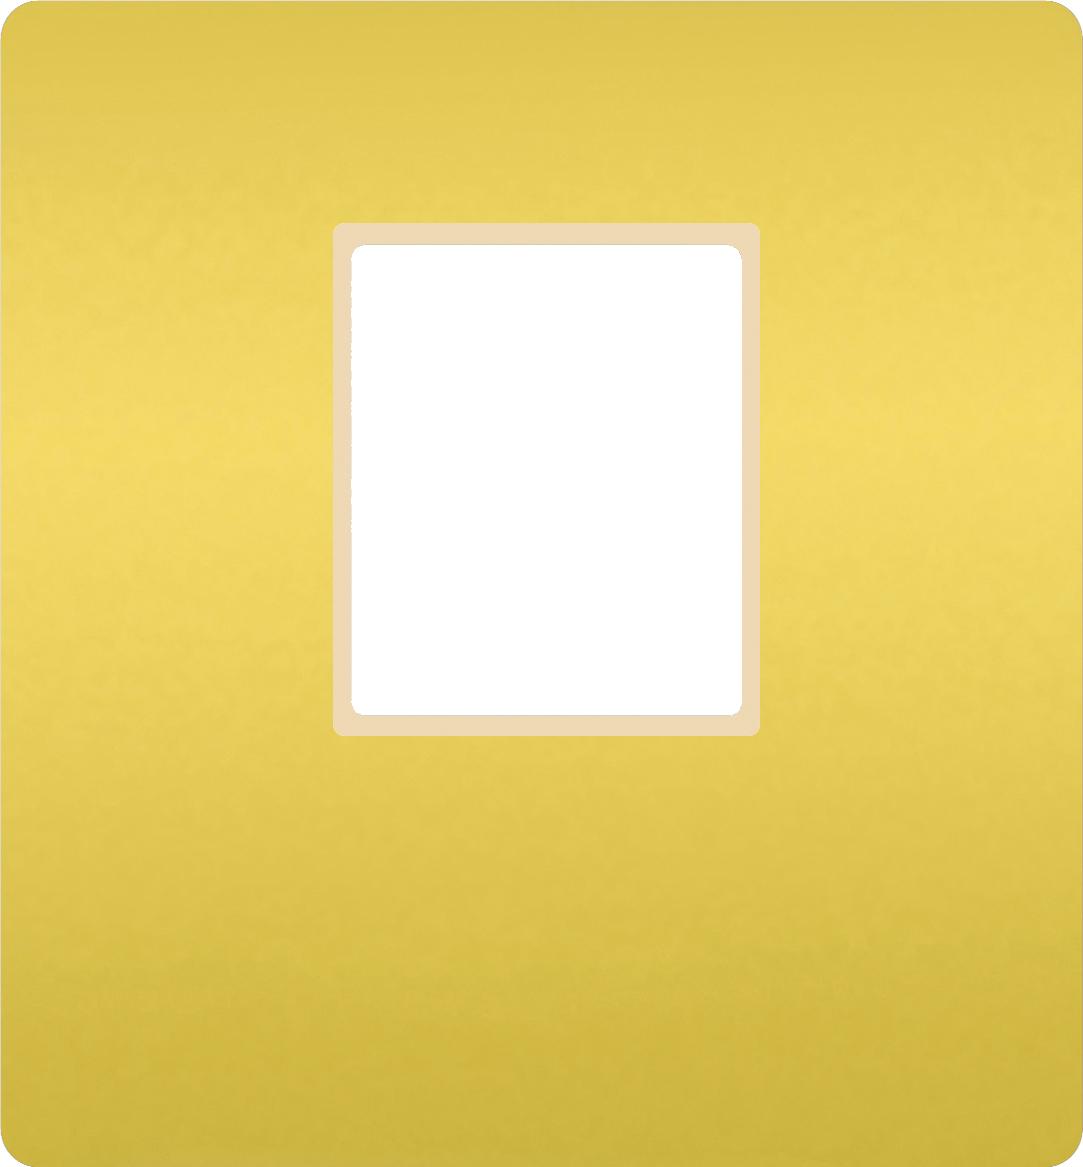  артикул FD04317OB-A название FEDE Светлое золото/ Беж. Монт. плата для 1-го инф. разъема RJ-45 Bright Gold (Oro Brillo)